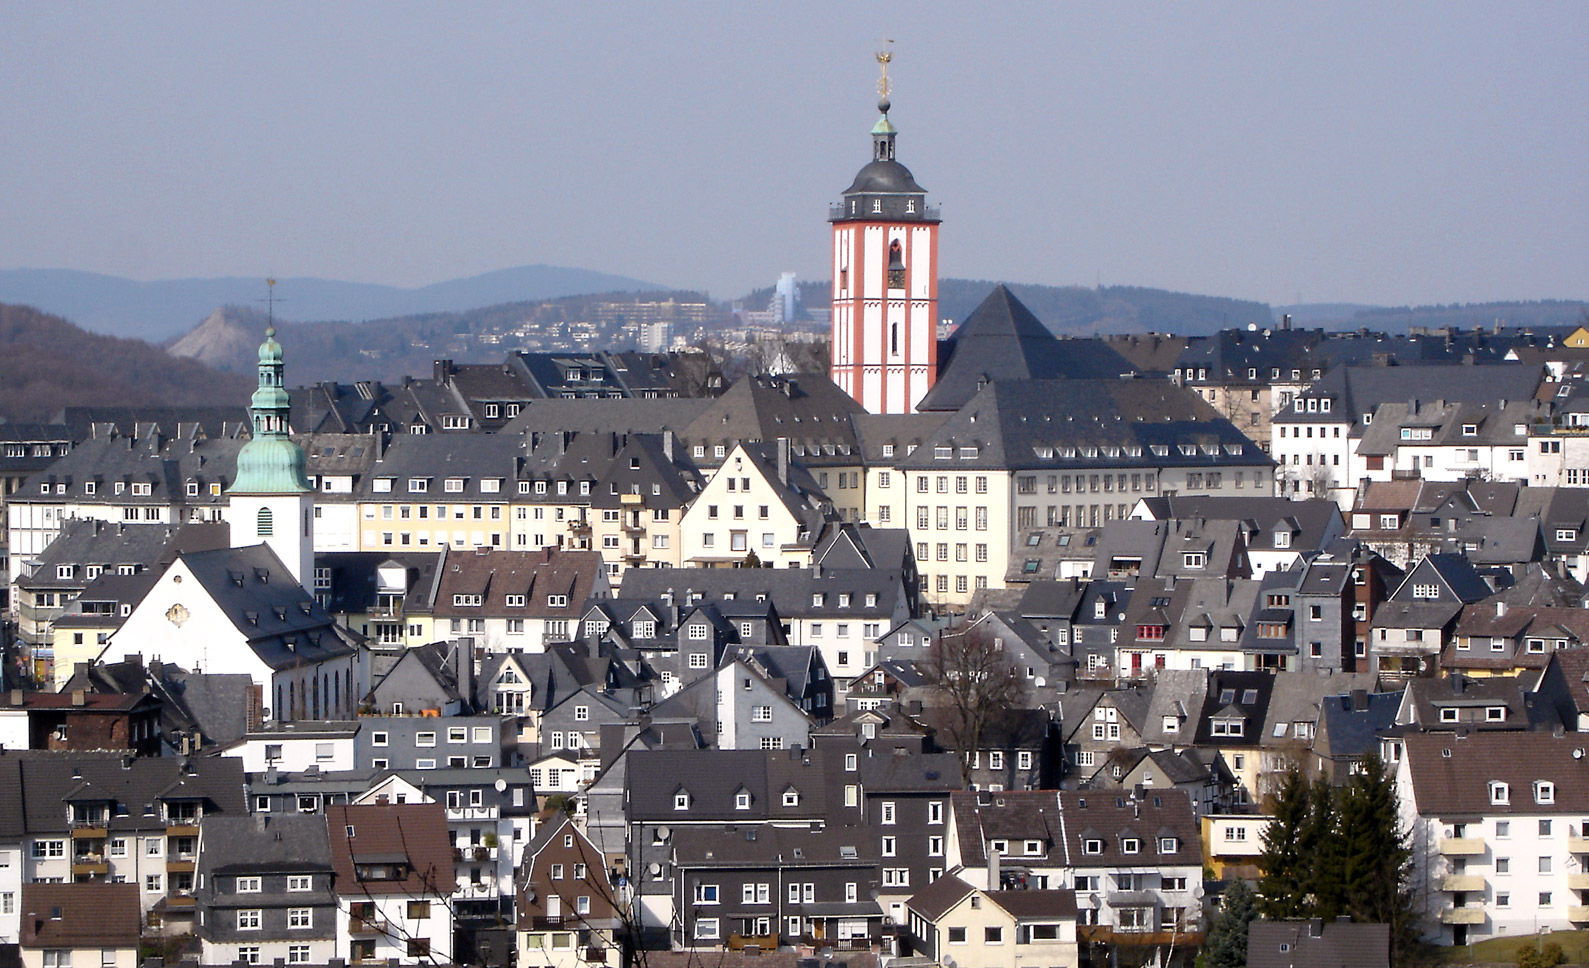 Blick auf die Oberstadt  von Siegen, Links ist die Marienkirche zu sehen, in der Mitte die Nikolaikirche mit dem Krönchen. (Foto Bob Ionescu März 2005)